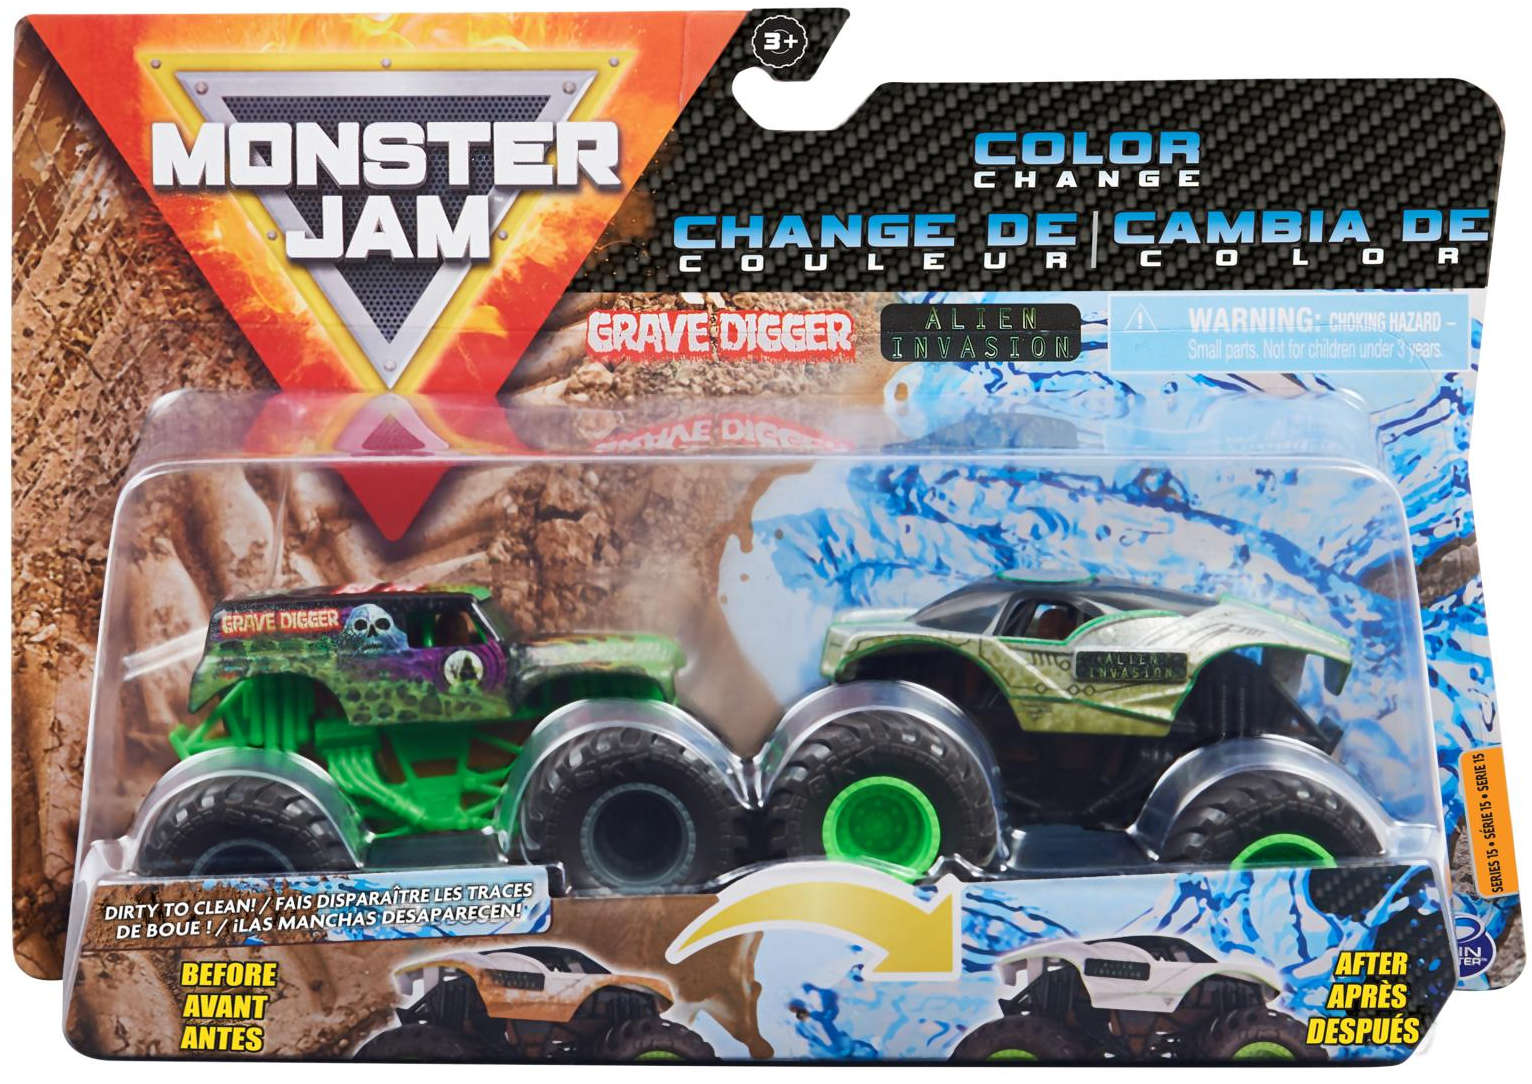 Monster Jam 2 ciê¿arówki zmieniaj±ce kolor Grave Digger i Alien Invasion